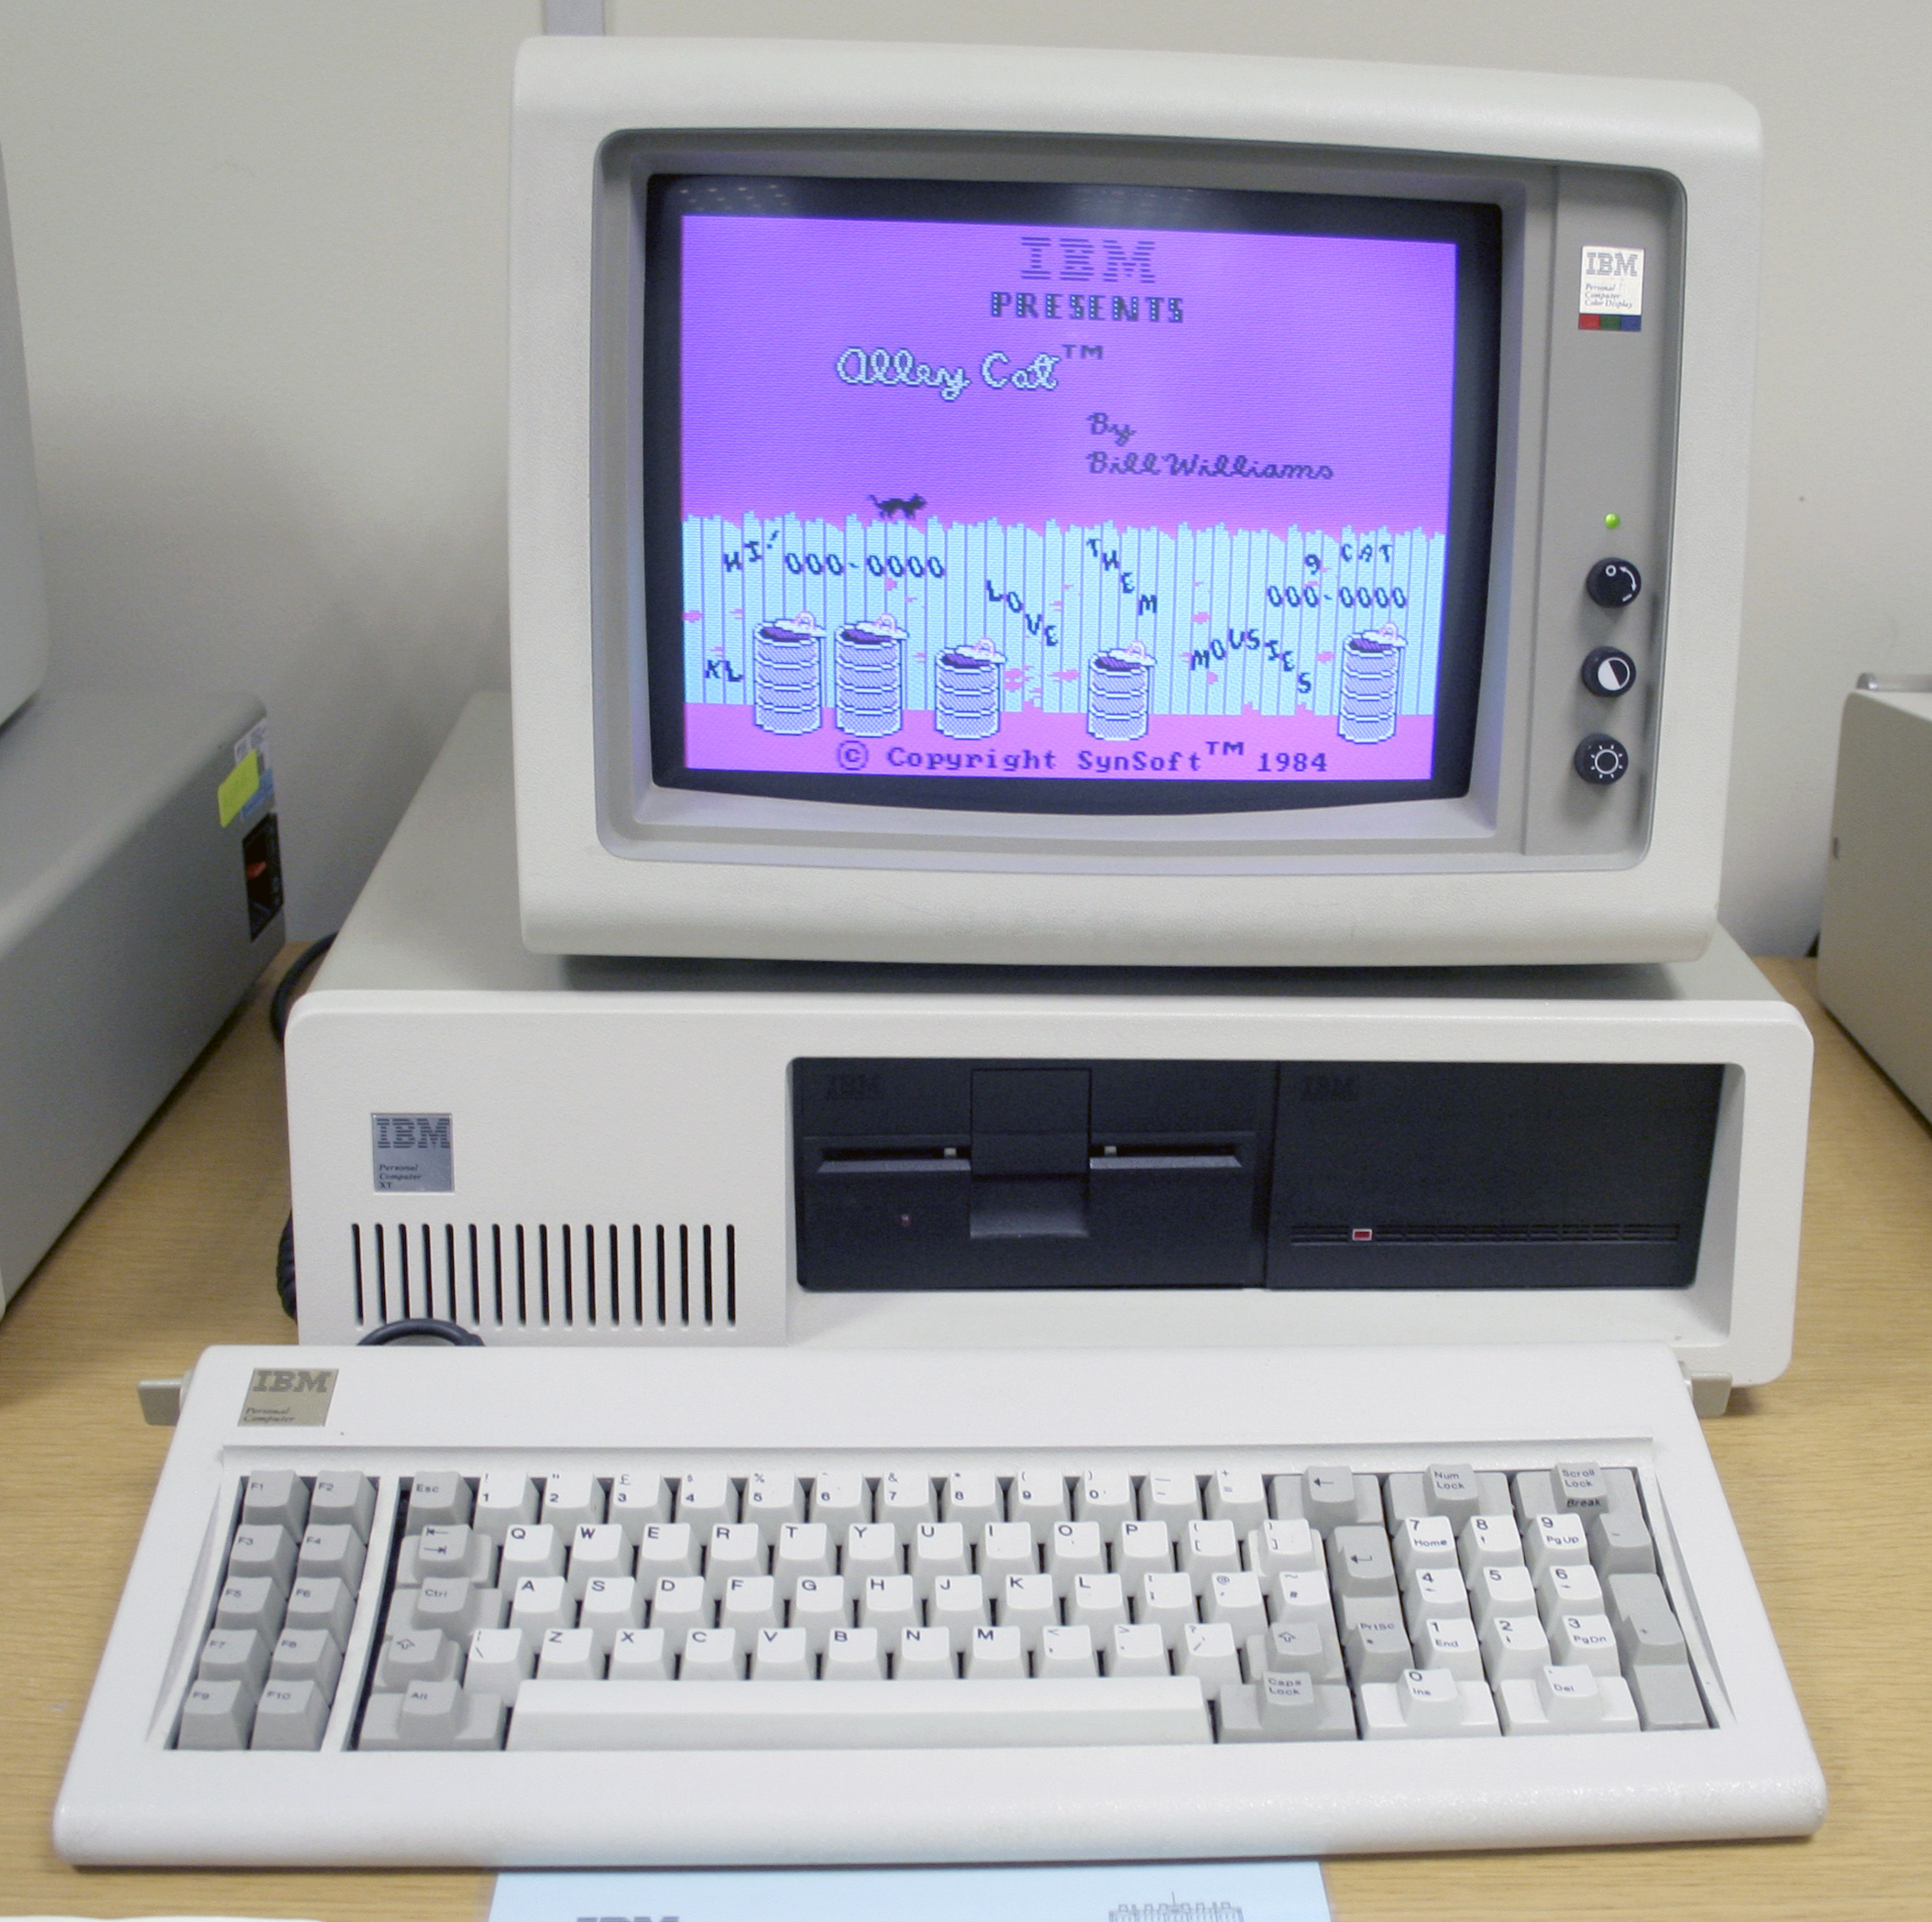 P r computer 1983 macbook pro 13 inch with retina display best buy